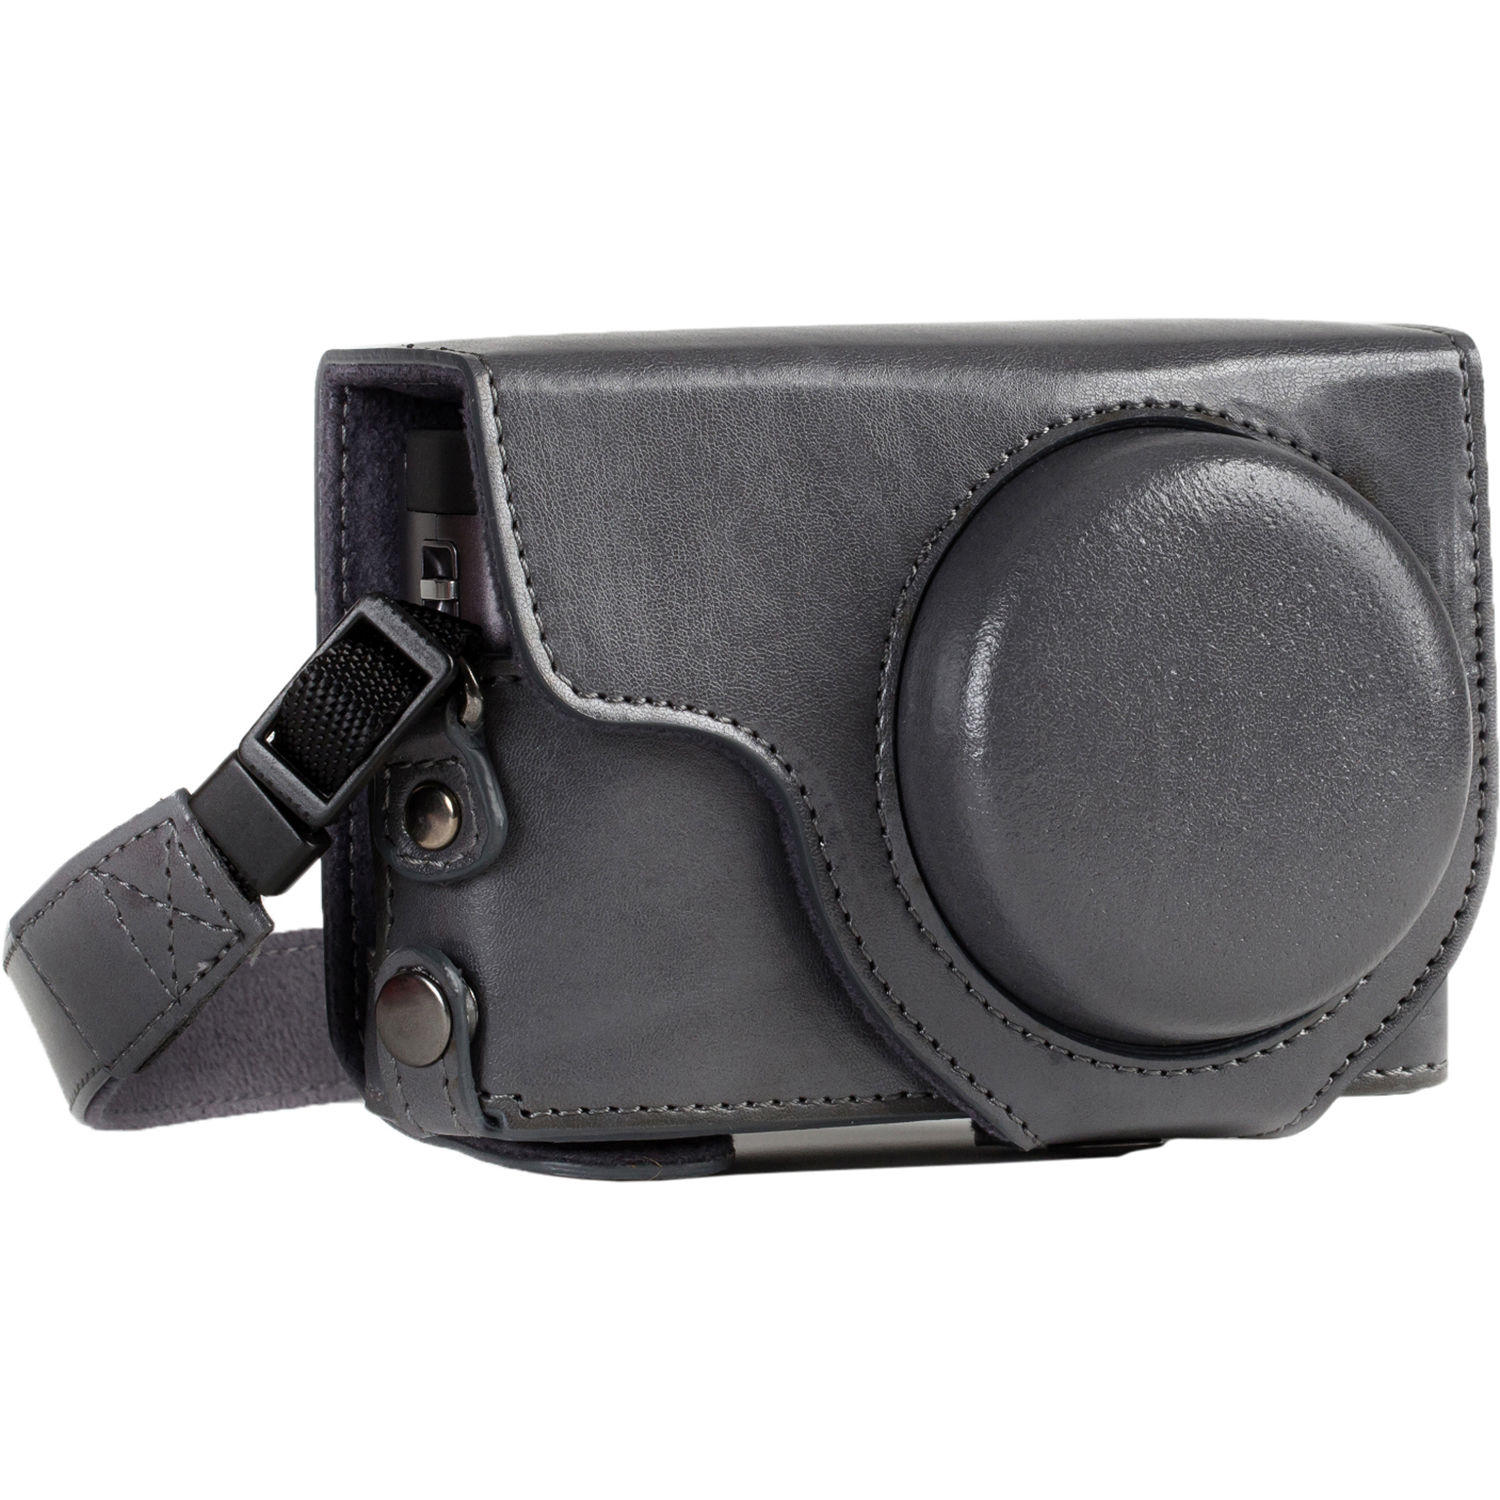 megagear leather camera case